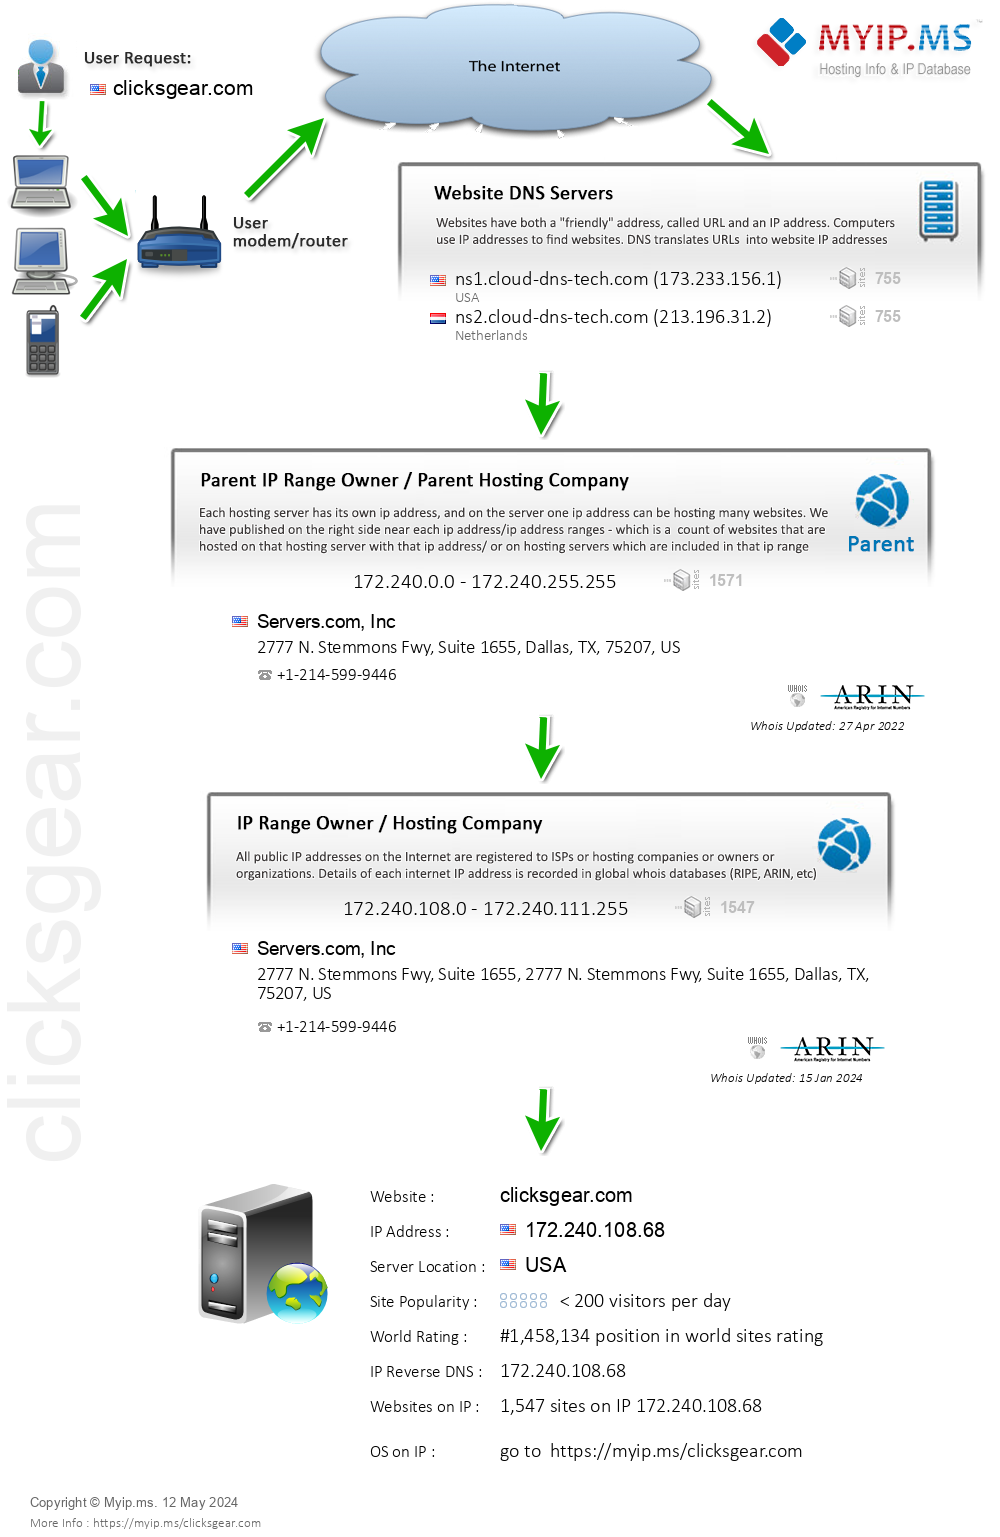 Clicksgear.com - Website Hosting Visual IP Diagram